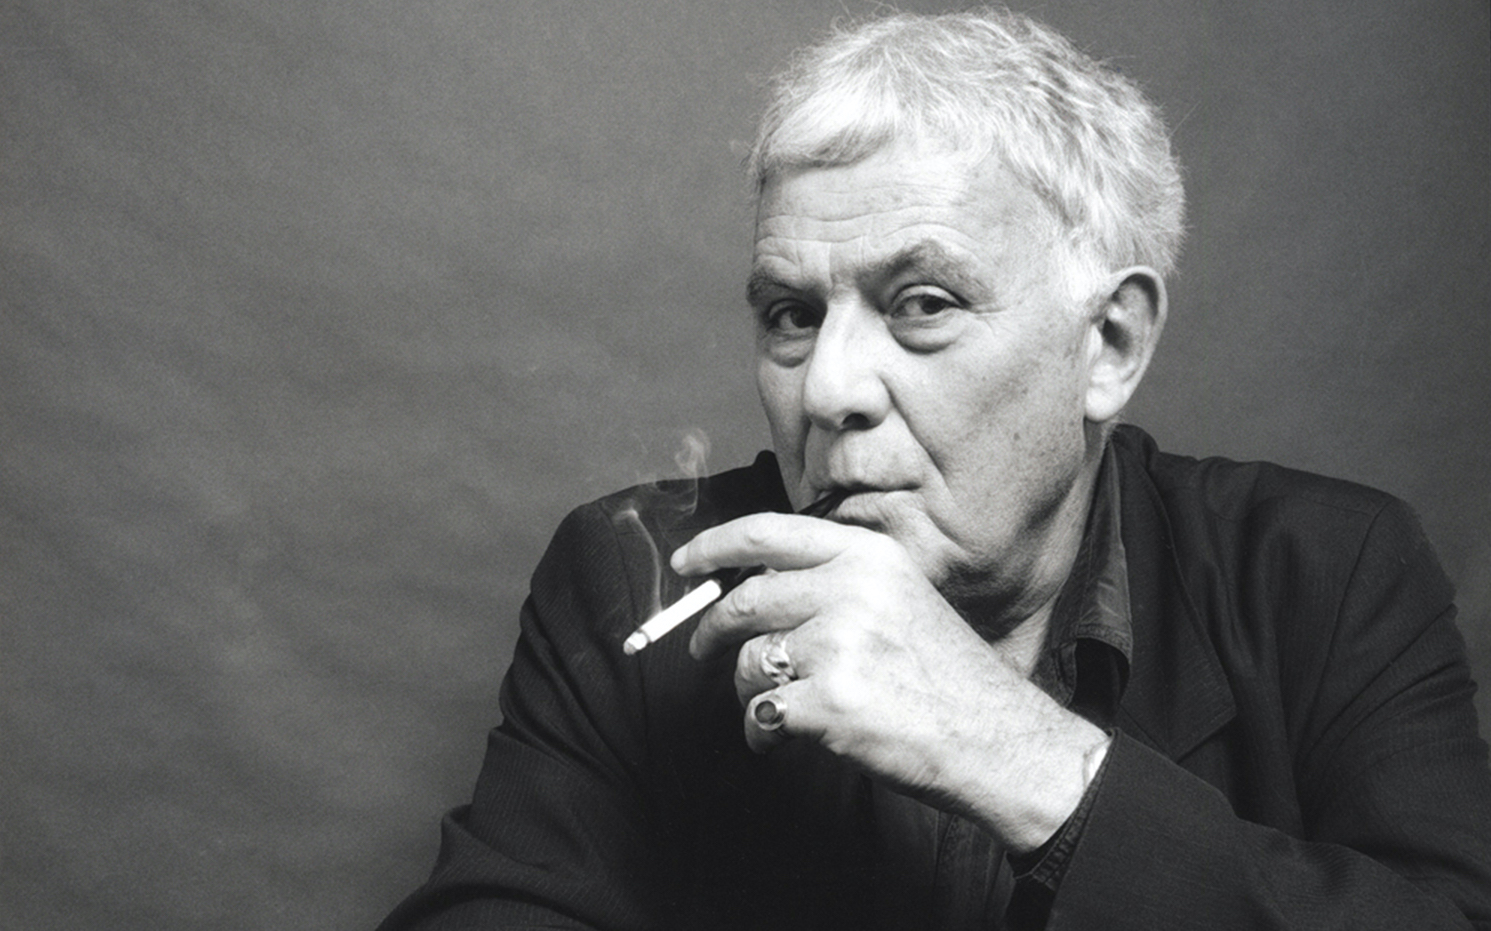 Portrait en noir et blanc de l'écrivain Philippe Sollers e,n train de fumer une cigarette.